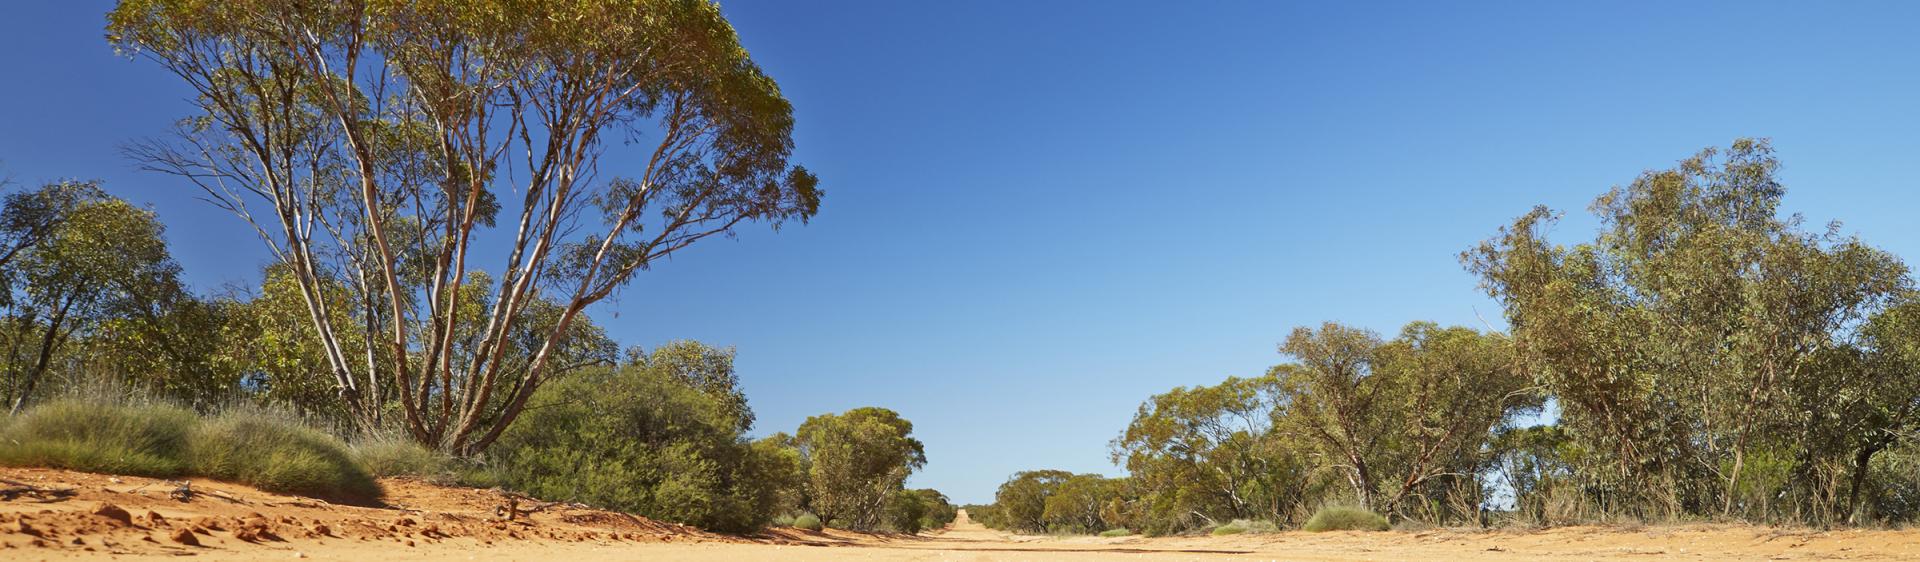 Weg im Mungo National Park, Broken Hill